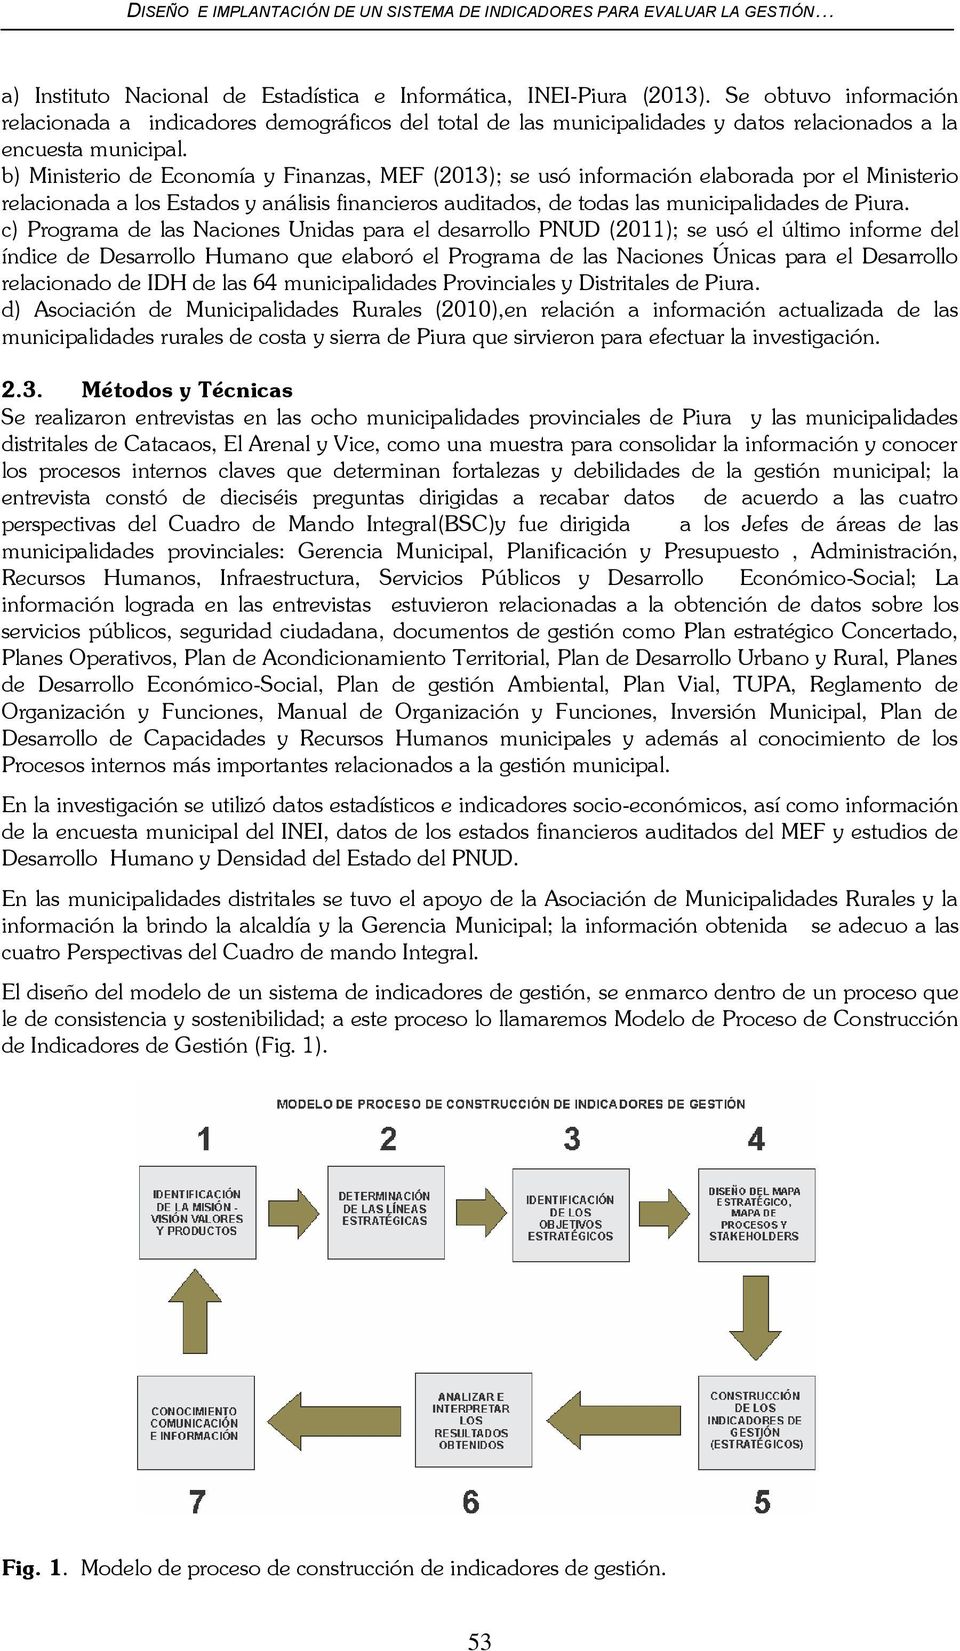 b) Ministerio de Economía y Finanzas, MEF (2013); se usó información elaborada por el Ministerio relacionada a los Estados y análisis financieros auditados, de todas las municipalidades de Piura.